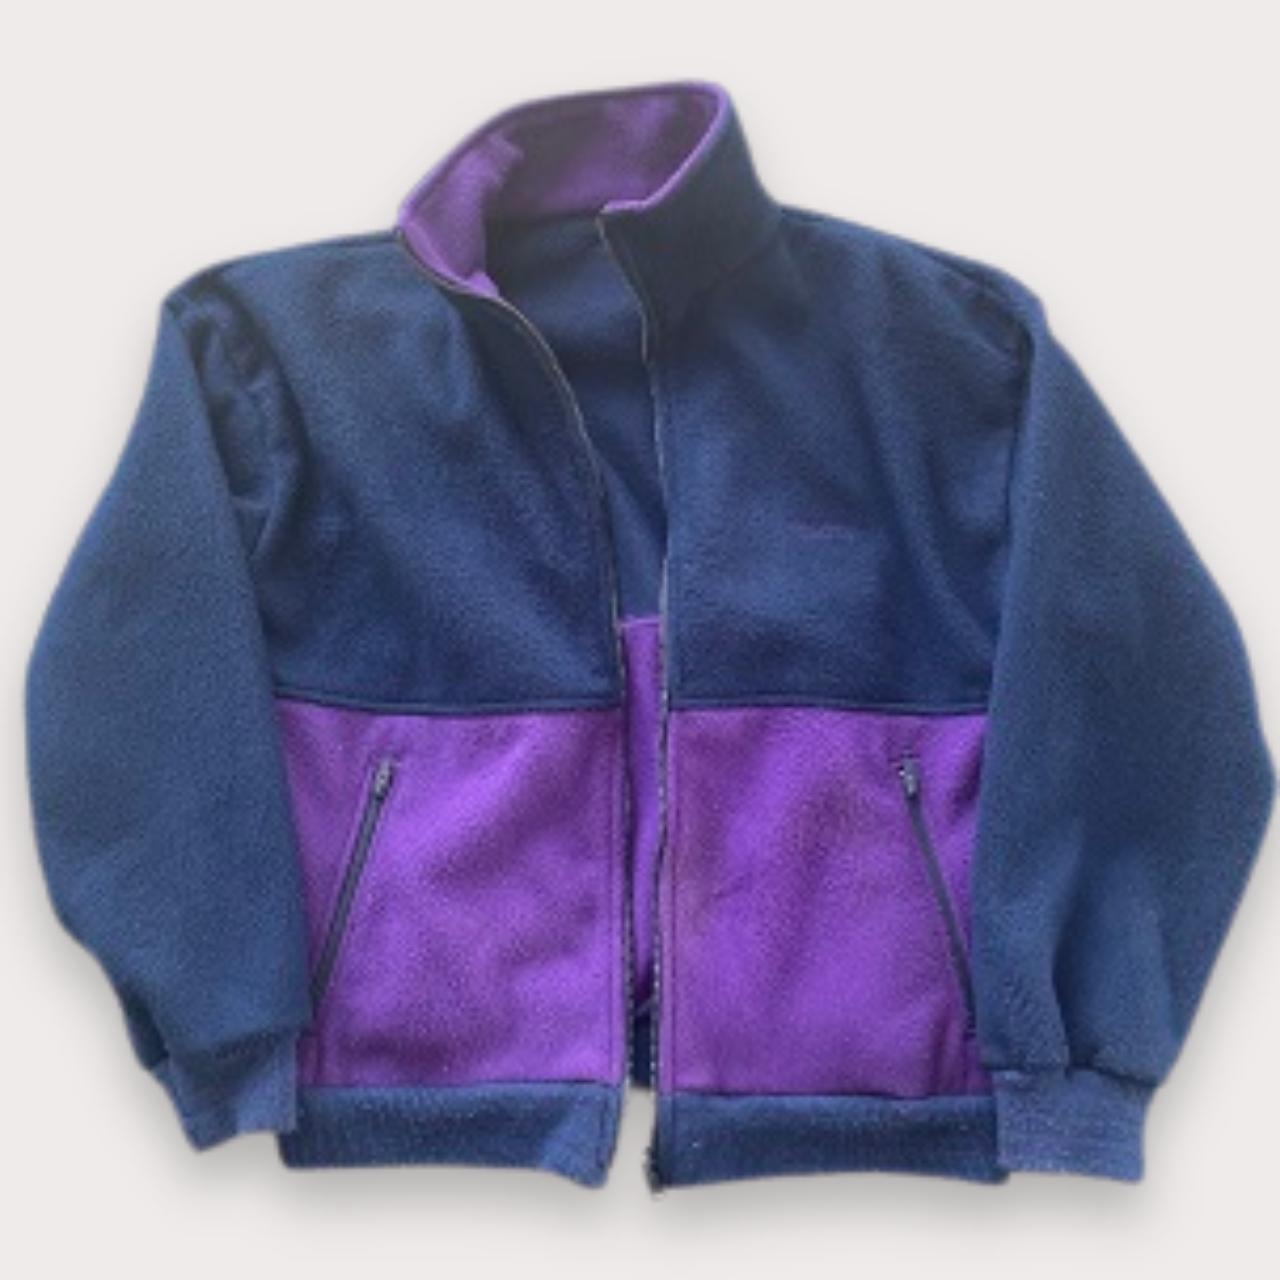 Vintage regatta lightweight bicolor fleece full zip up jacket in blue and purple